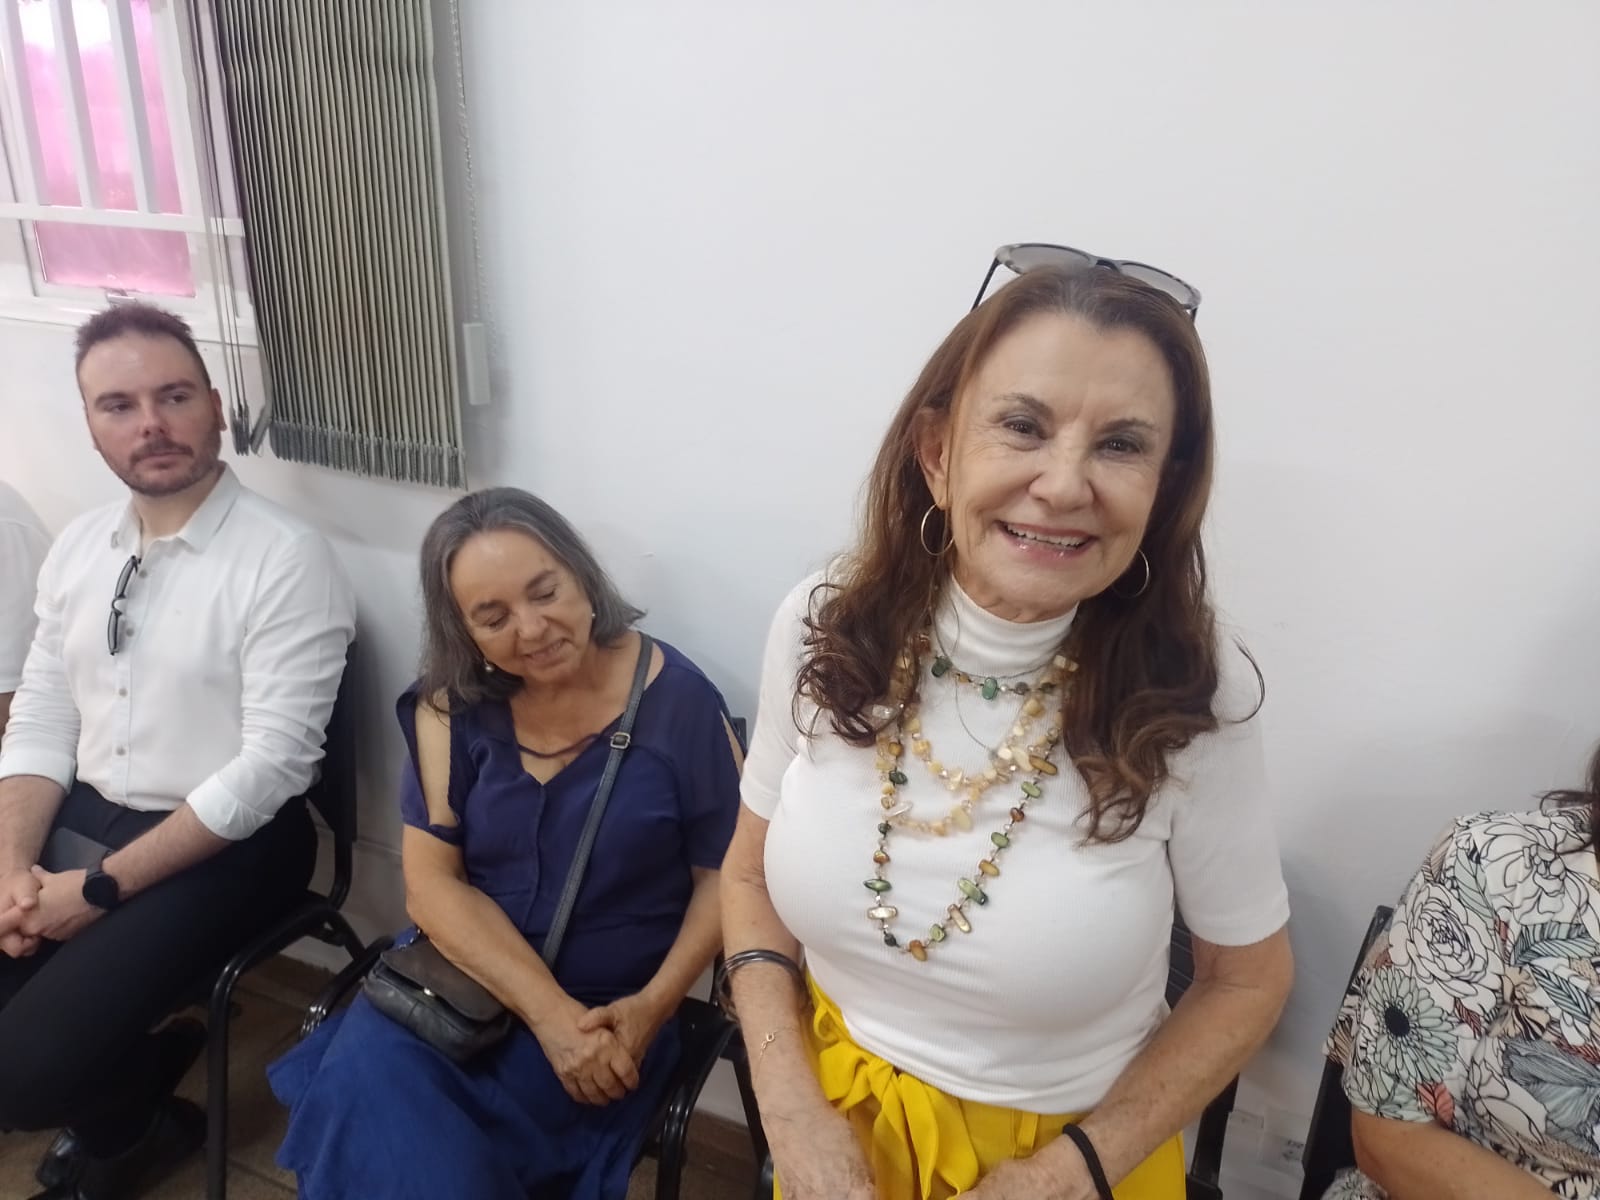 Renovação e paridade de gênero marcam diretoria eleita do Sinpro Campinas e Região